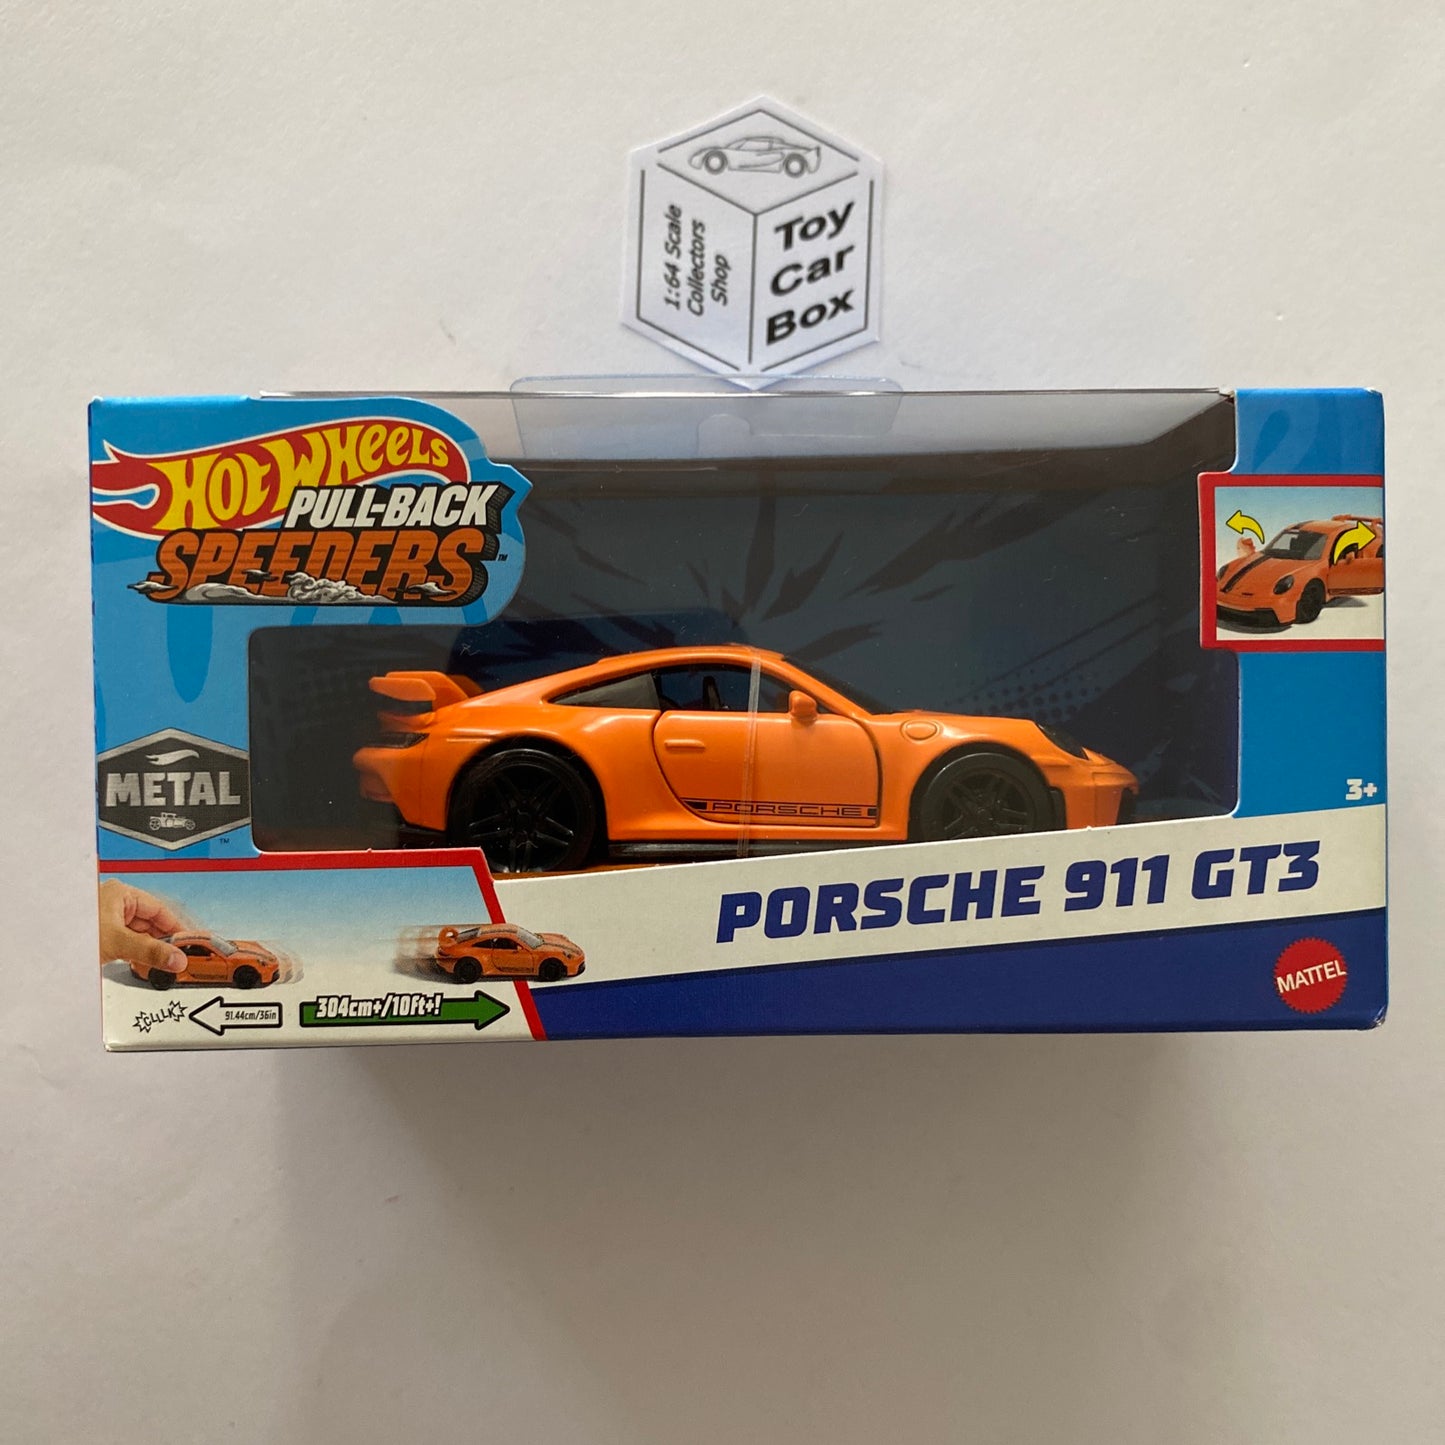 2023 HOT WHEELS 1:43* - Porsche 911 GT3 (Orange - Pull-back Speeders) H10